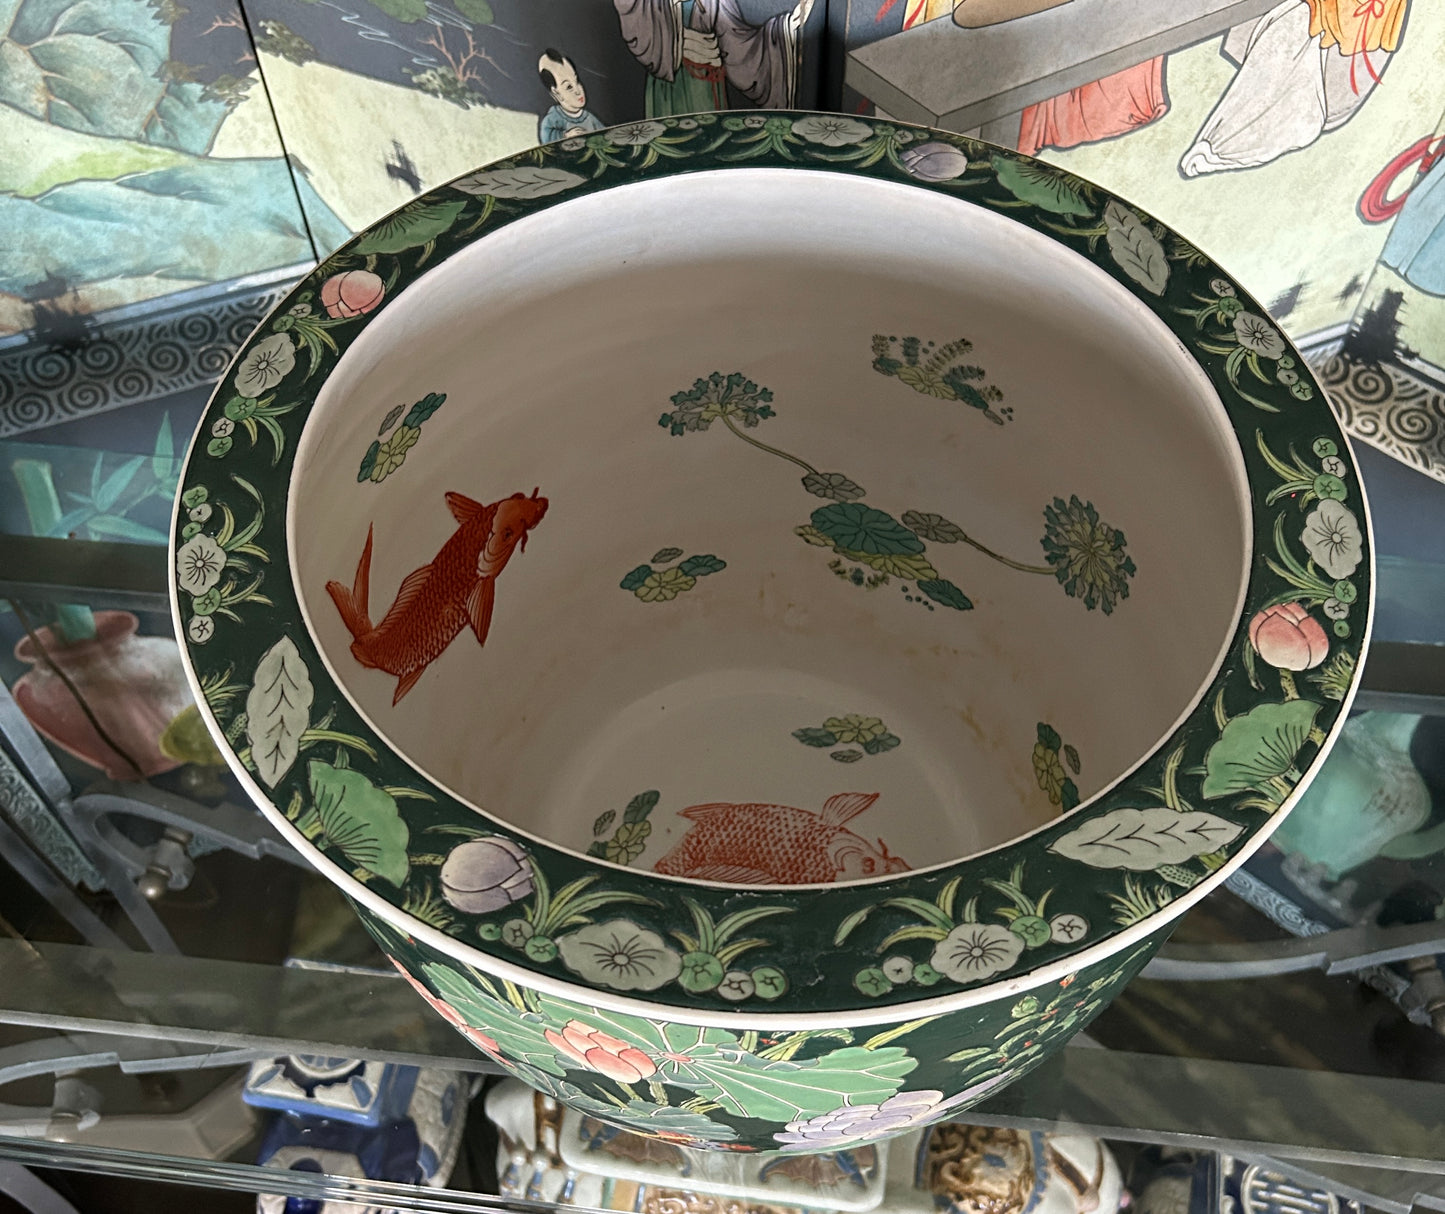 Large Vintage Chinoiserie Porcelain Fish Bowl Jardiniere, 13"H x 16"Diam.